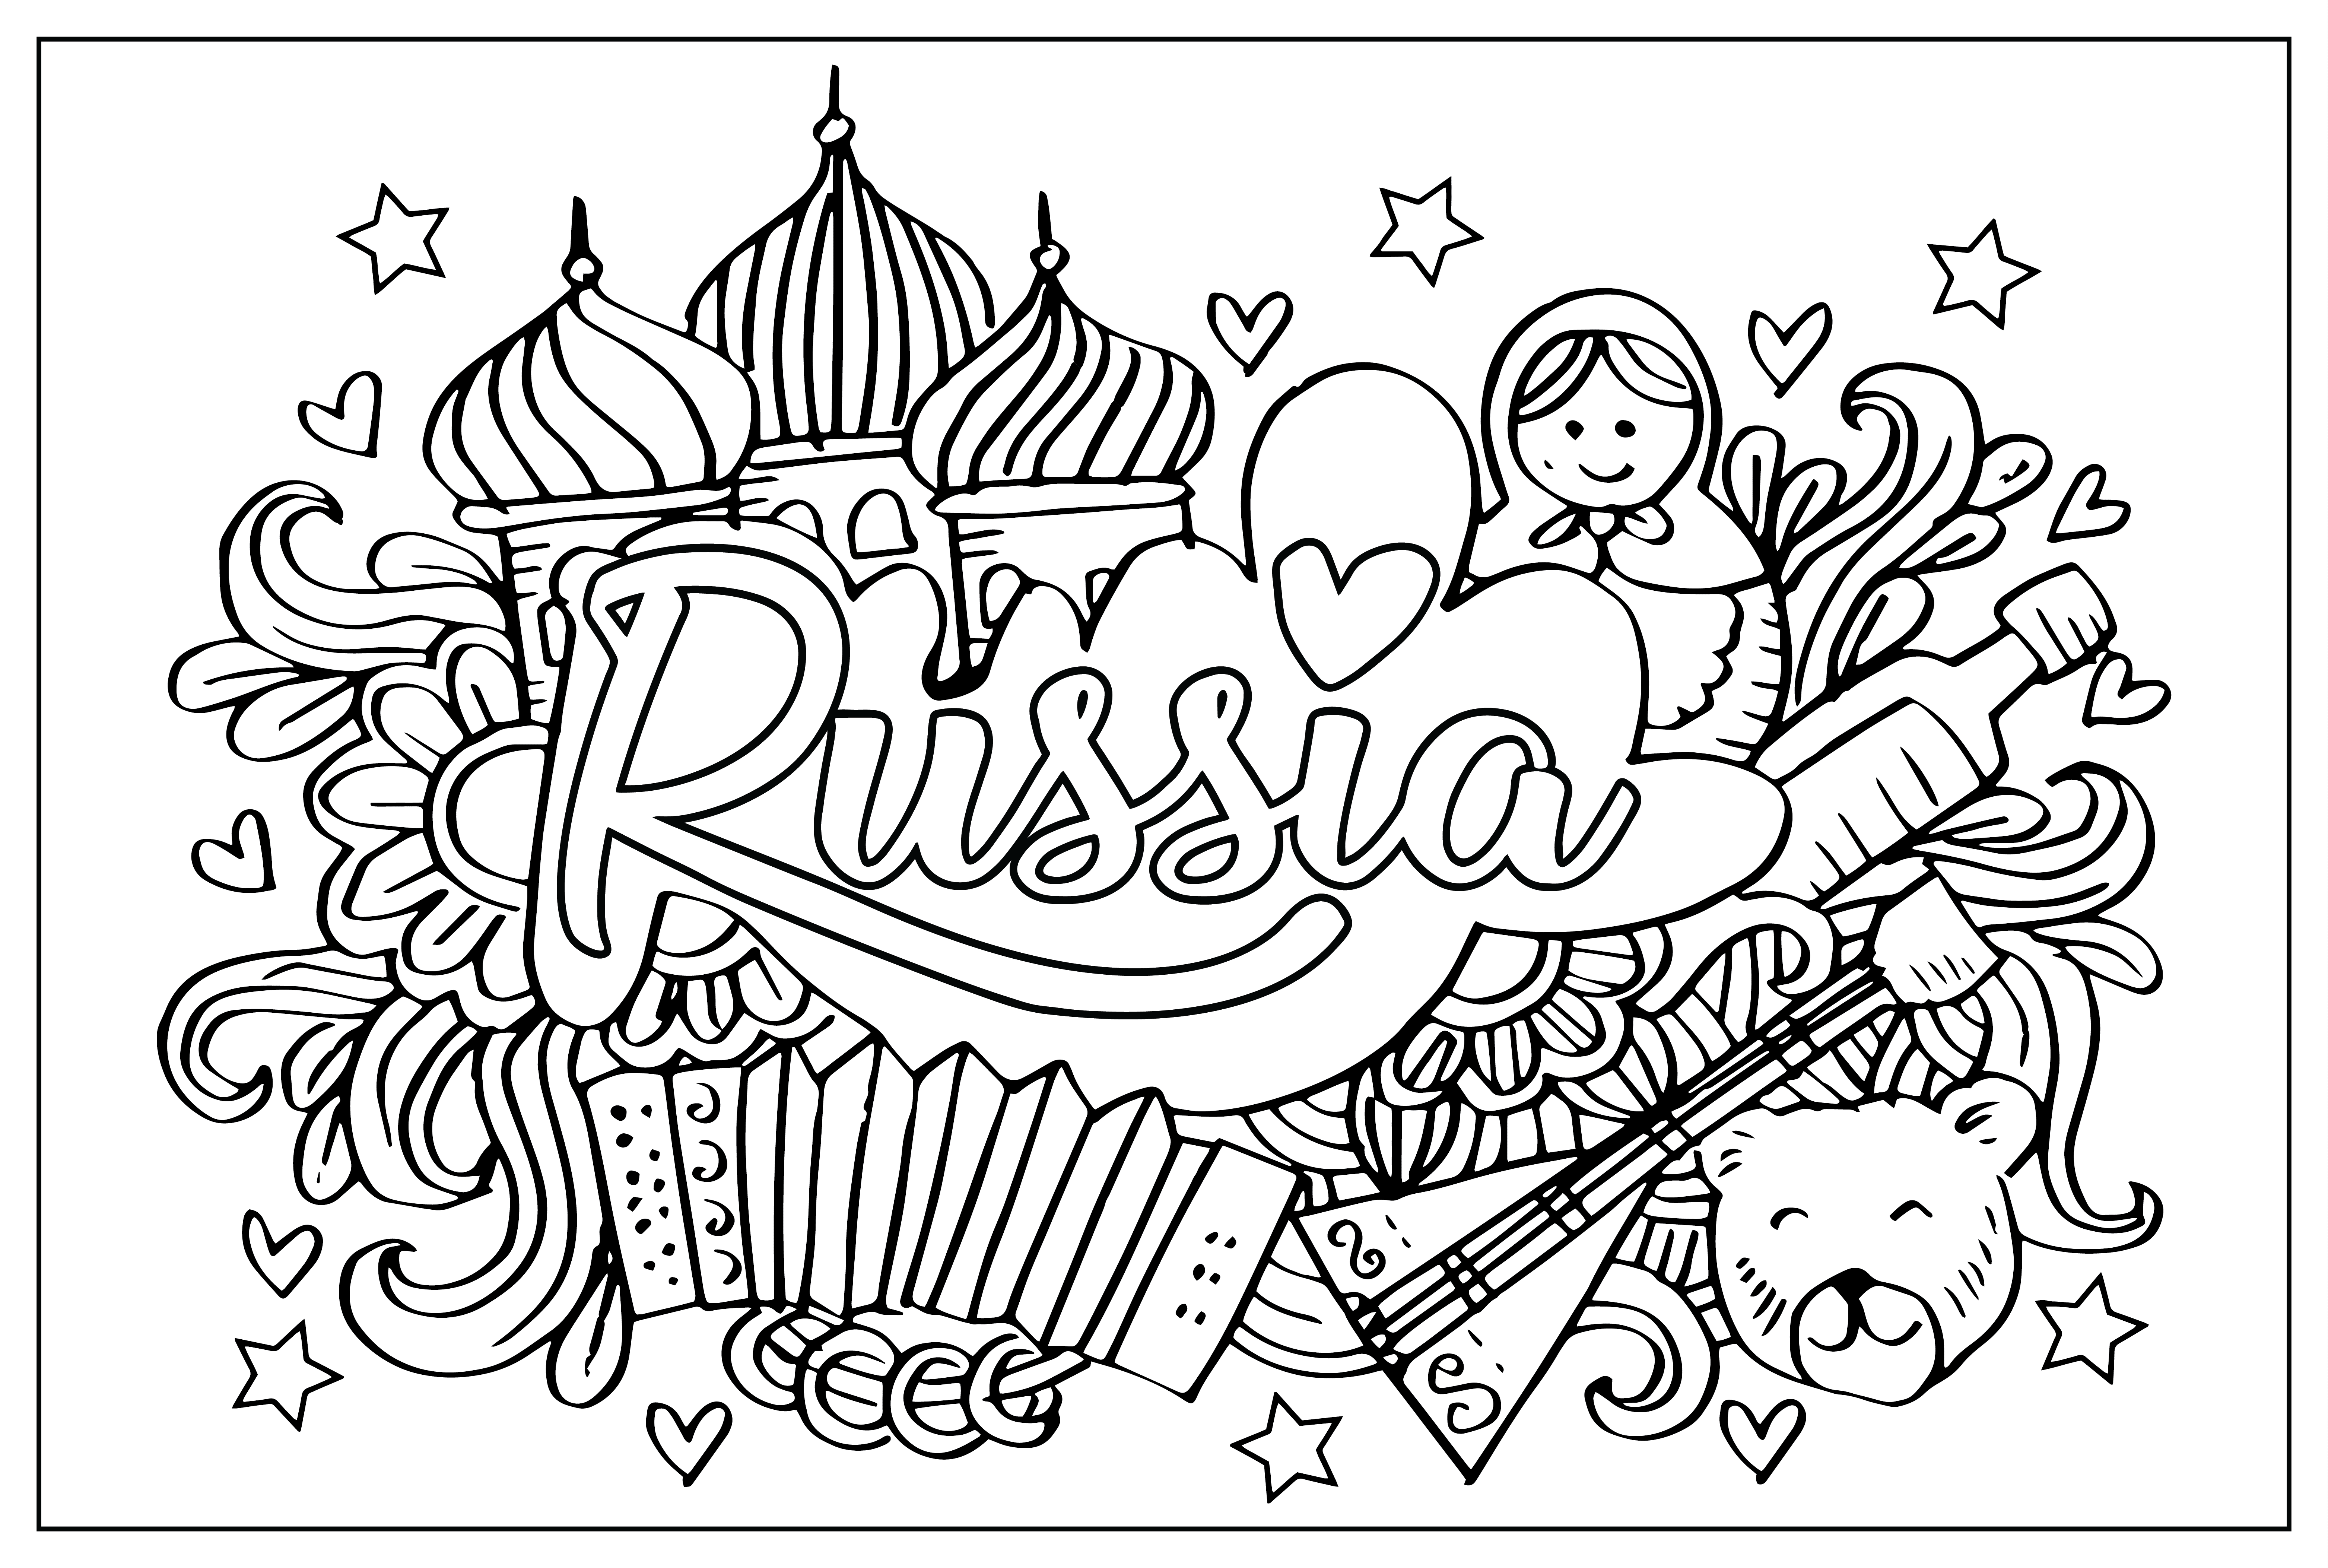 俄罗斯 俄罗斯彩页